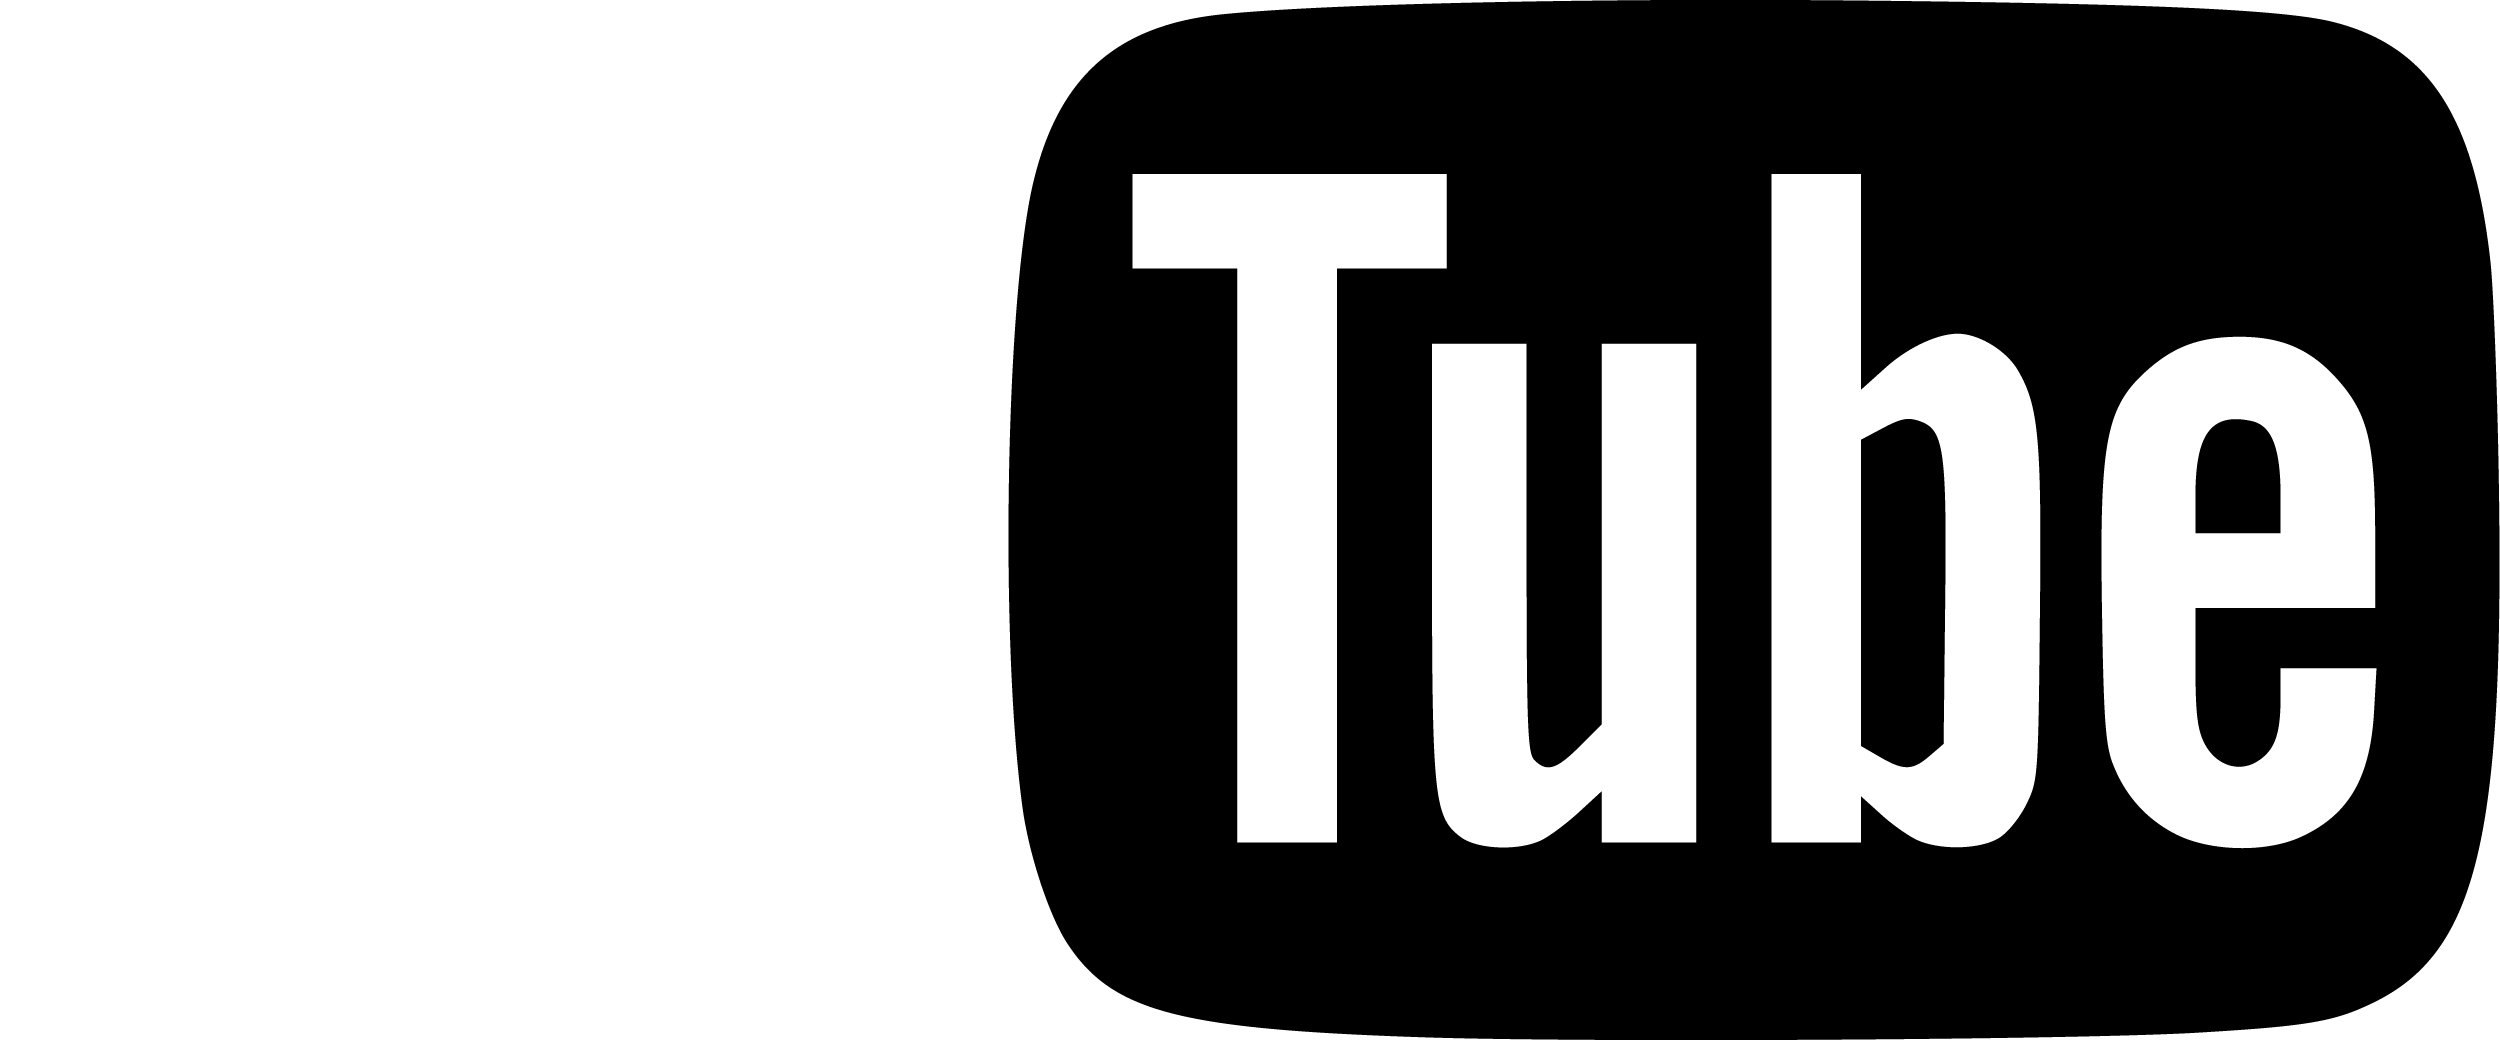 youtube logo white background